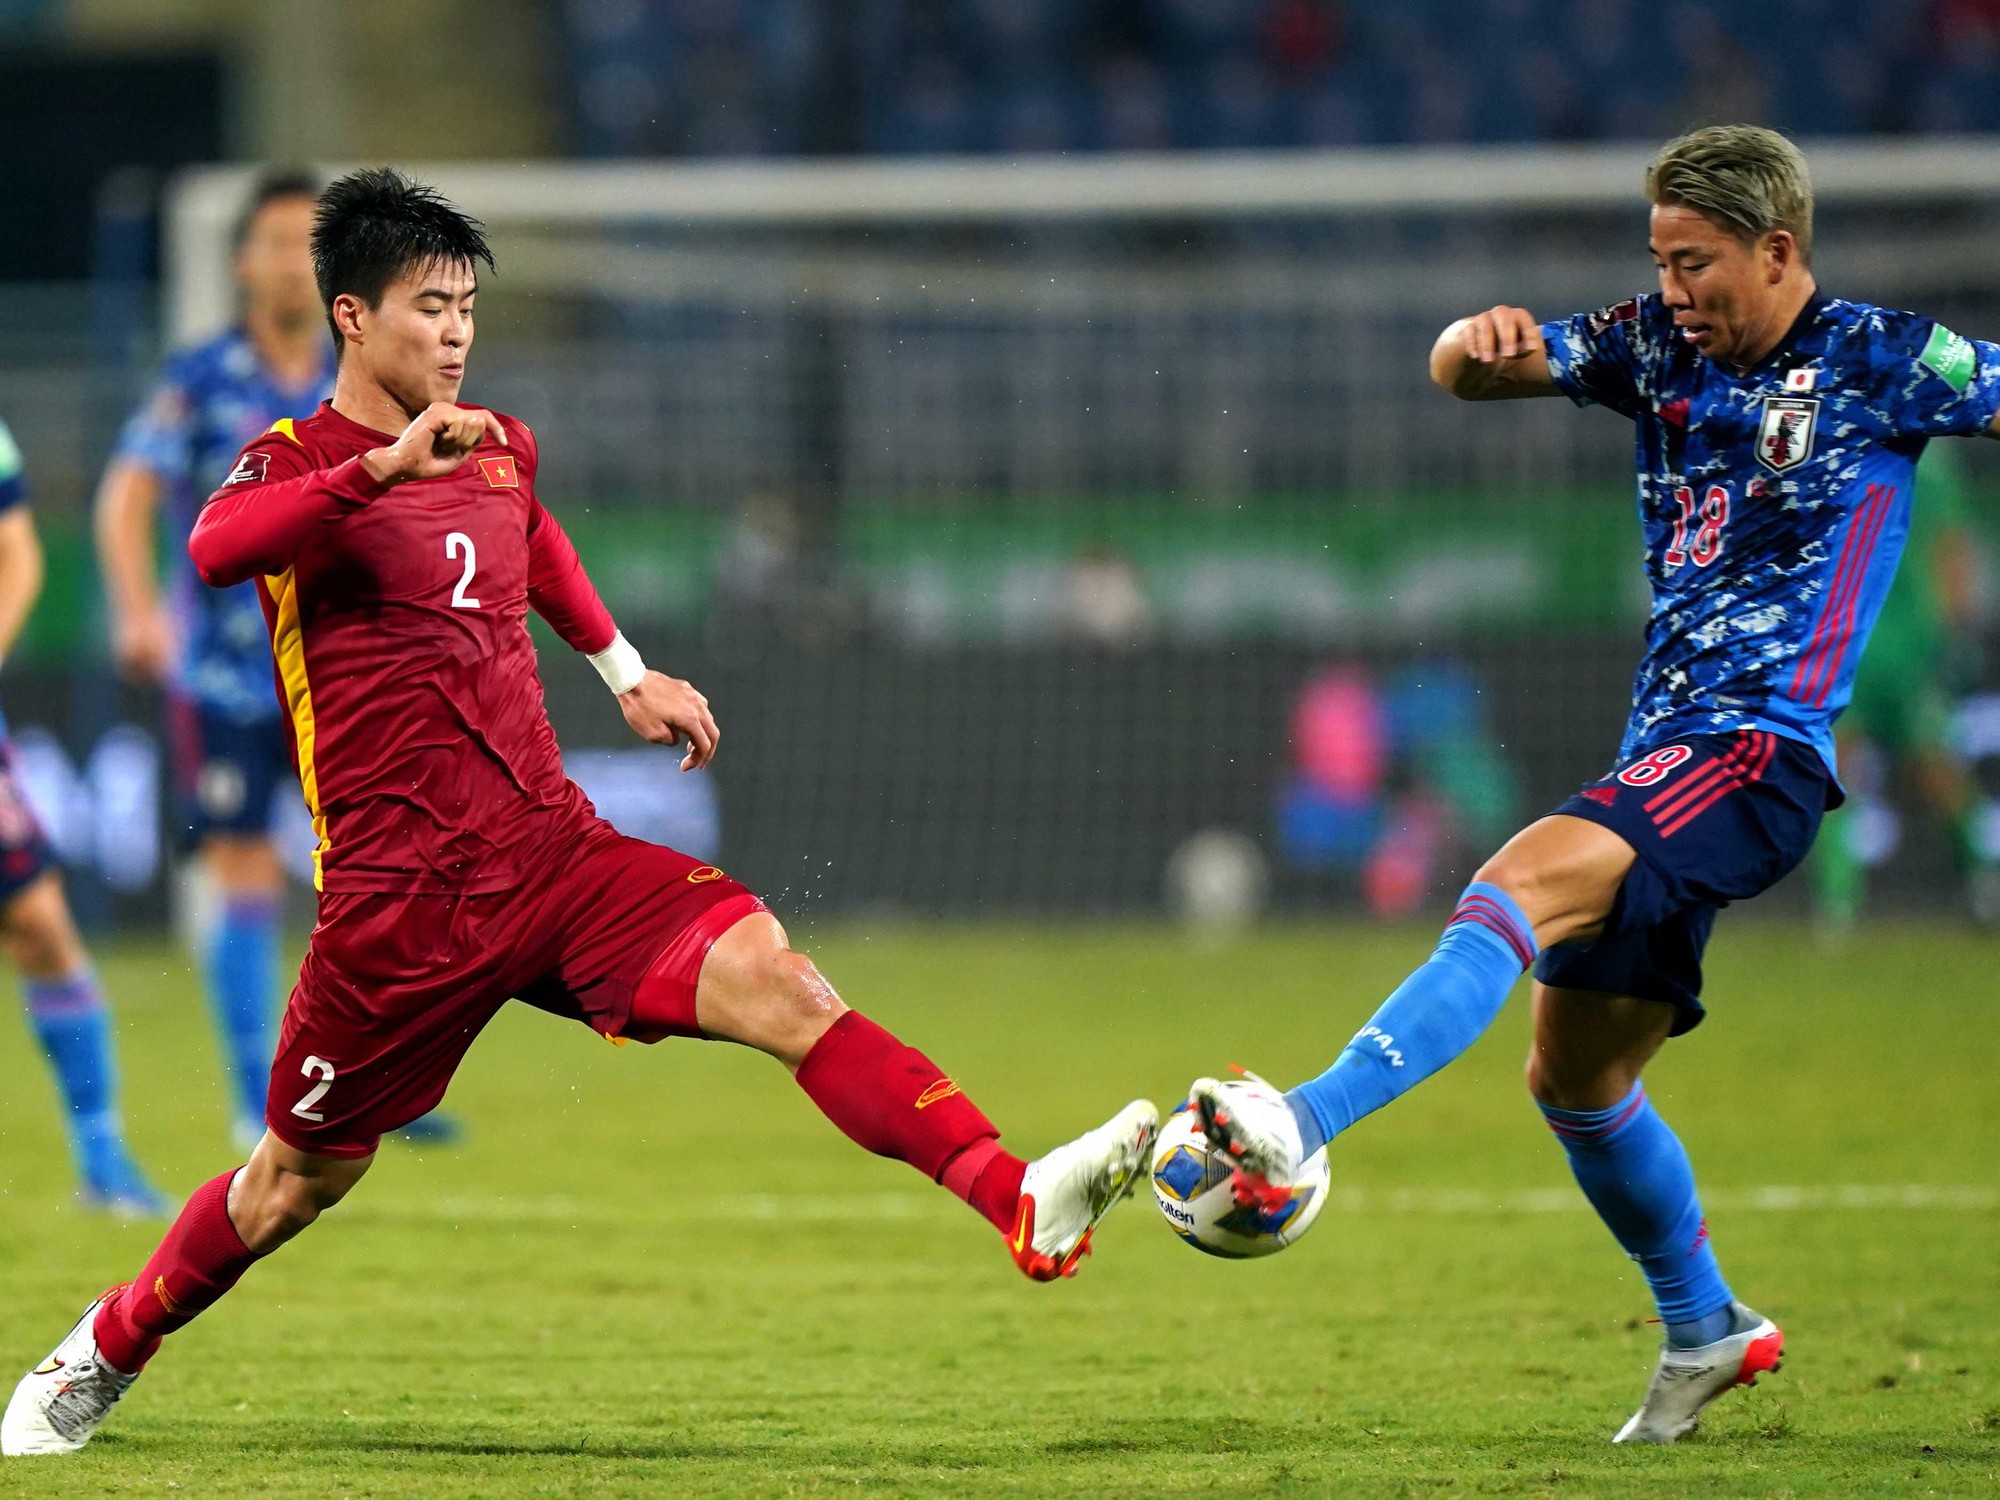 Đội tuyển Việt Nam đá giao hữu với Hong Kong trên sân Lạch Tray - Ảnh 2.